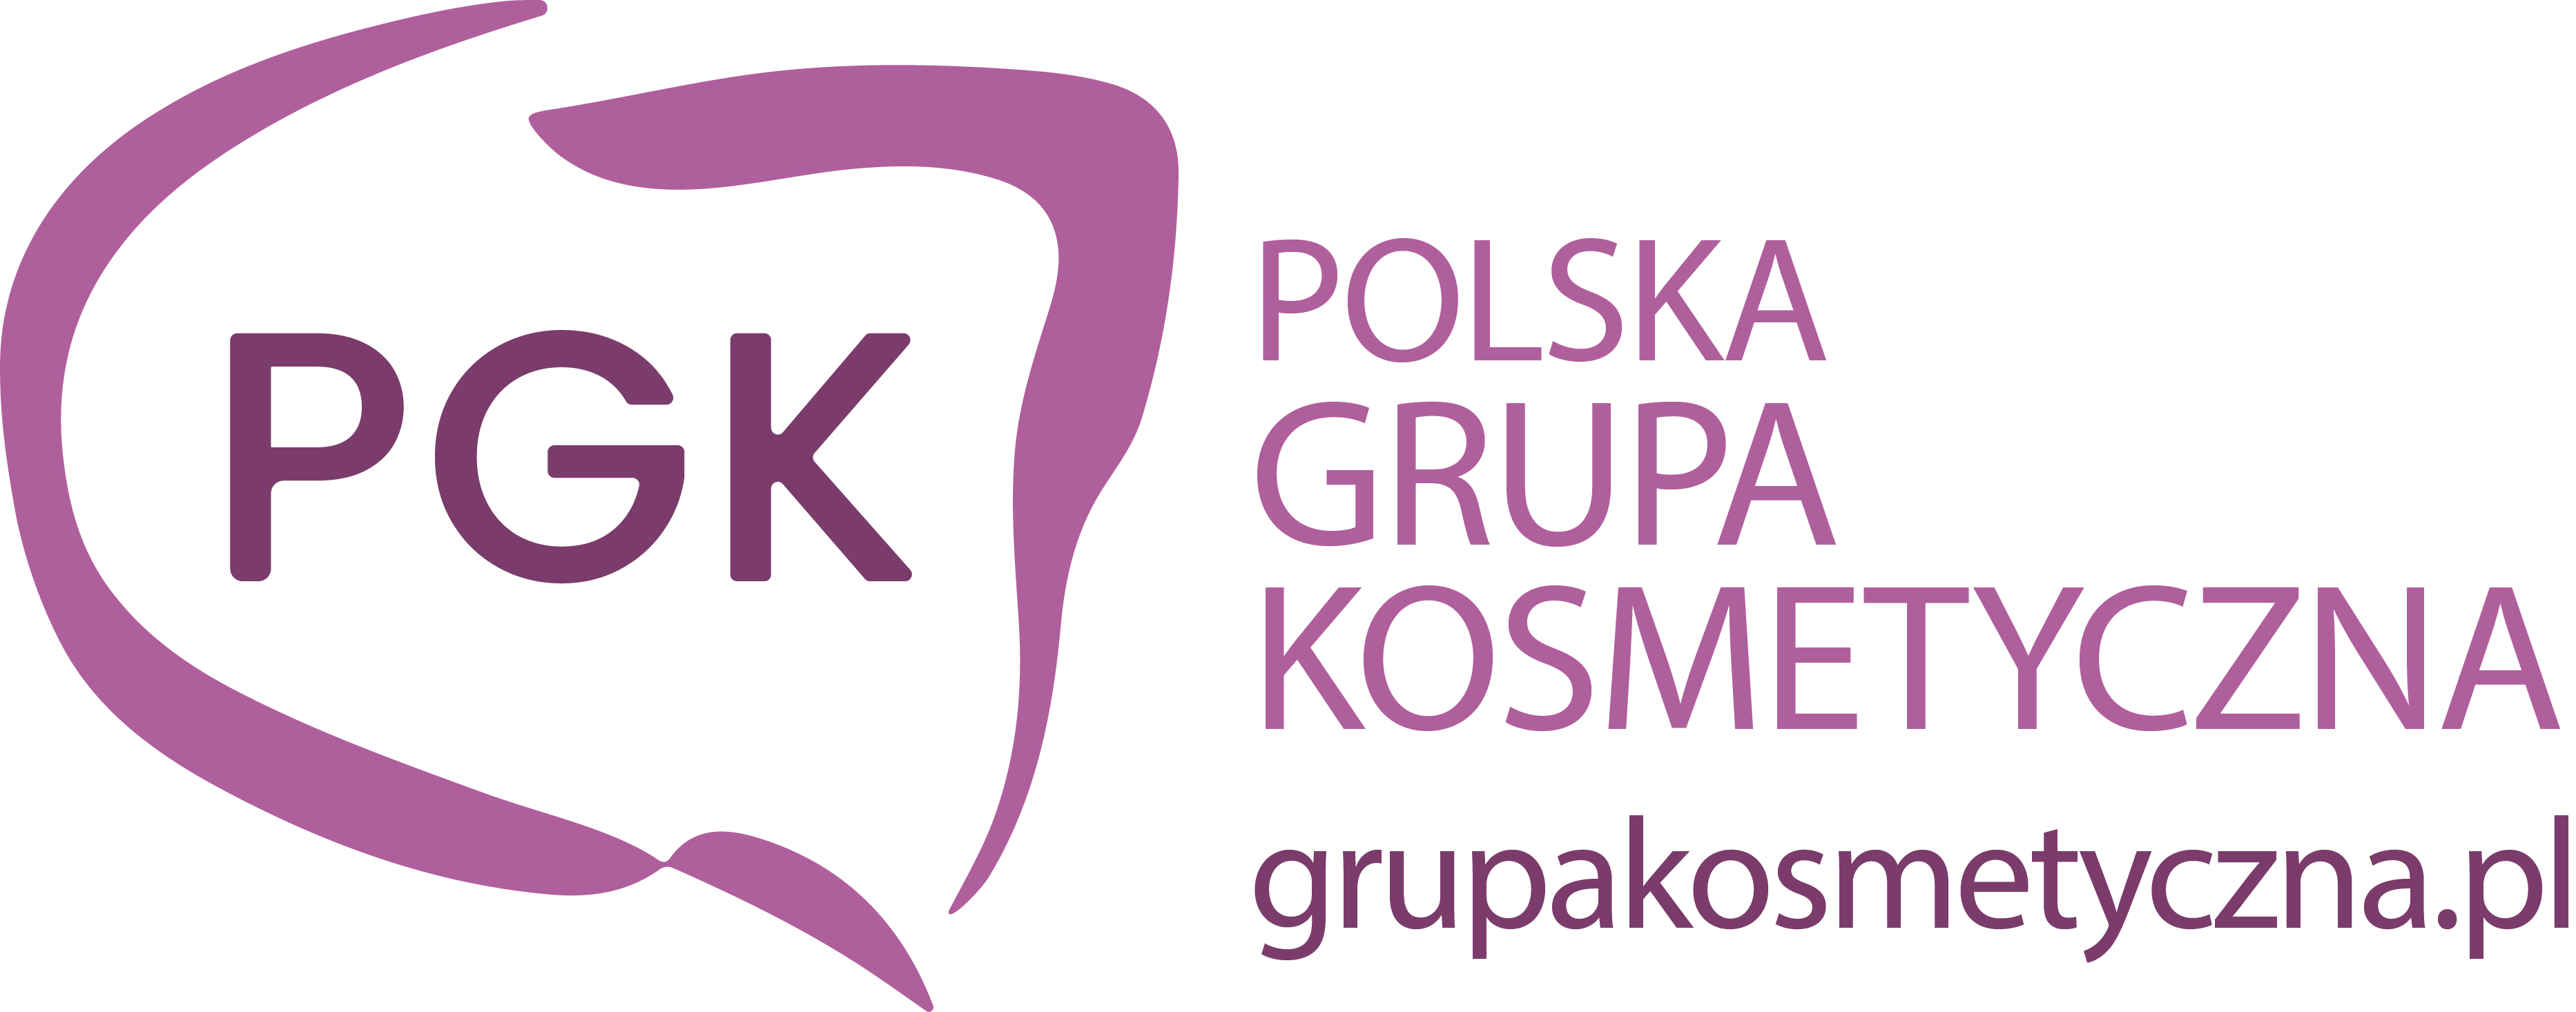 Logo_PGK_remastered